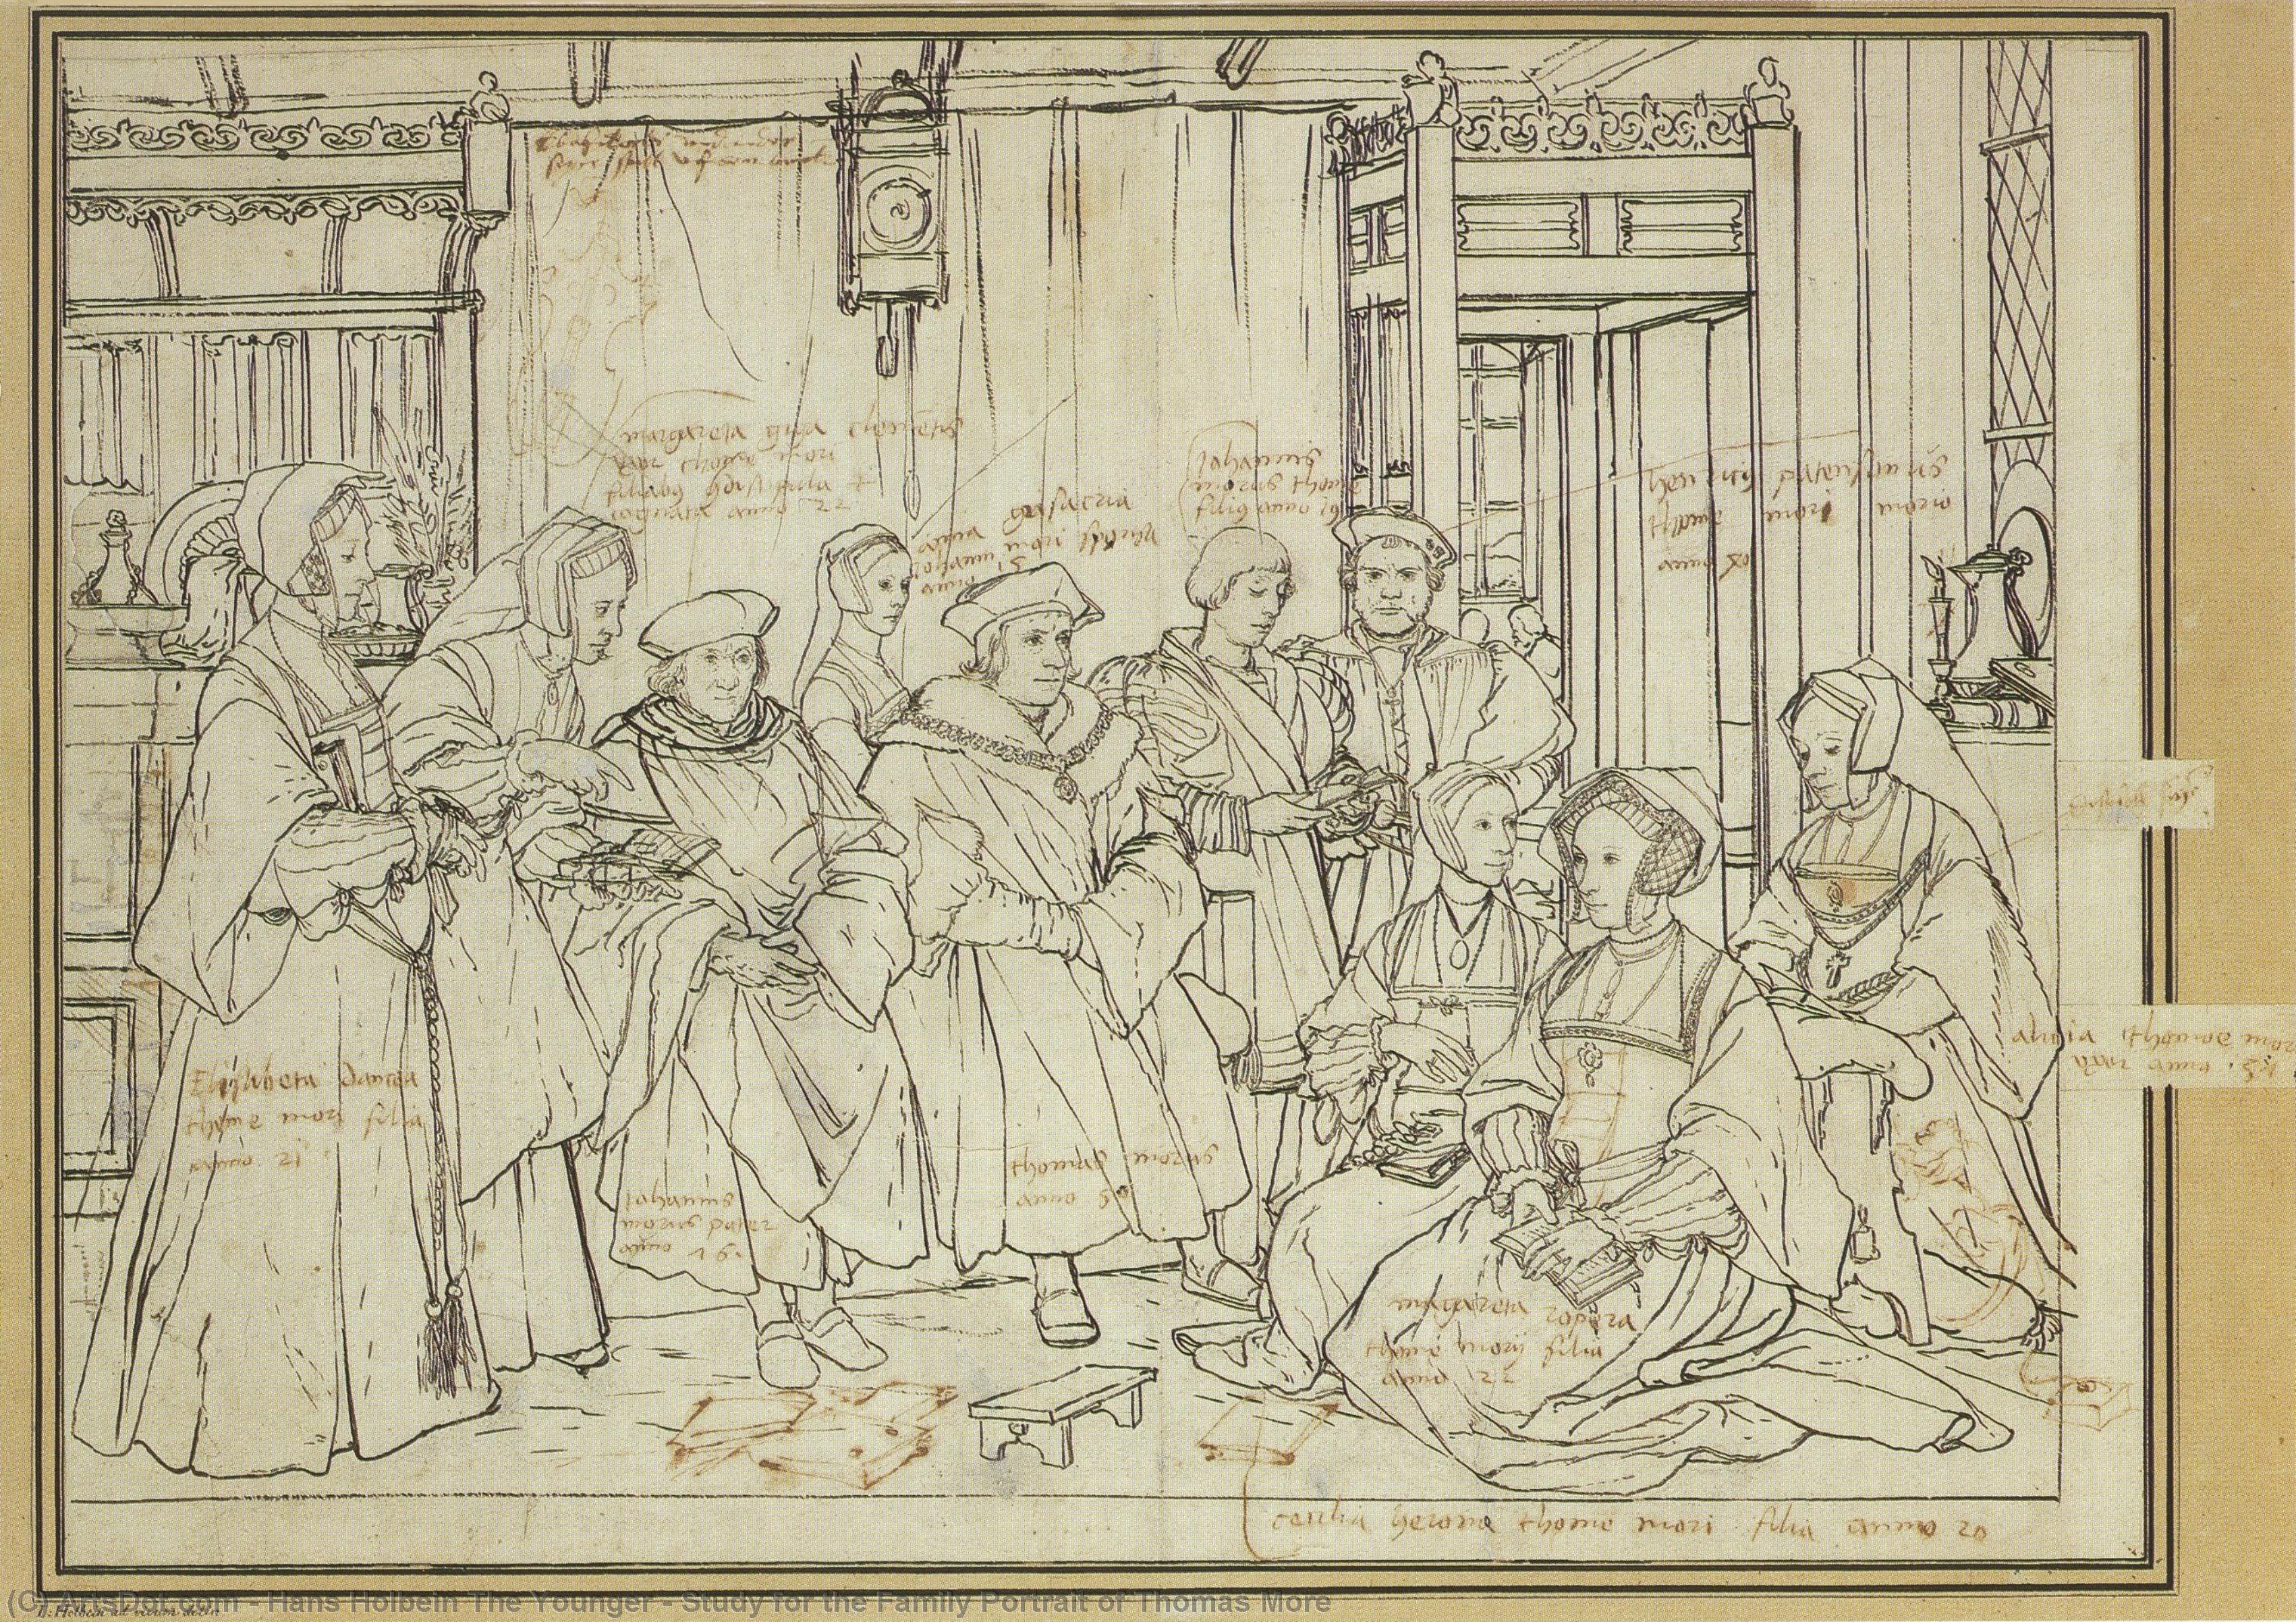 WikiOO.org - Енциклопедия за изящни изкуства - Живопис, Произведения на изкуството Hans Holbein The Younger - Study for the Family Portrait of Thomas More